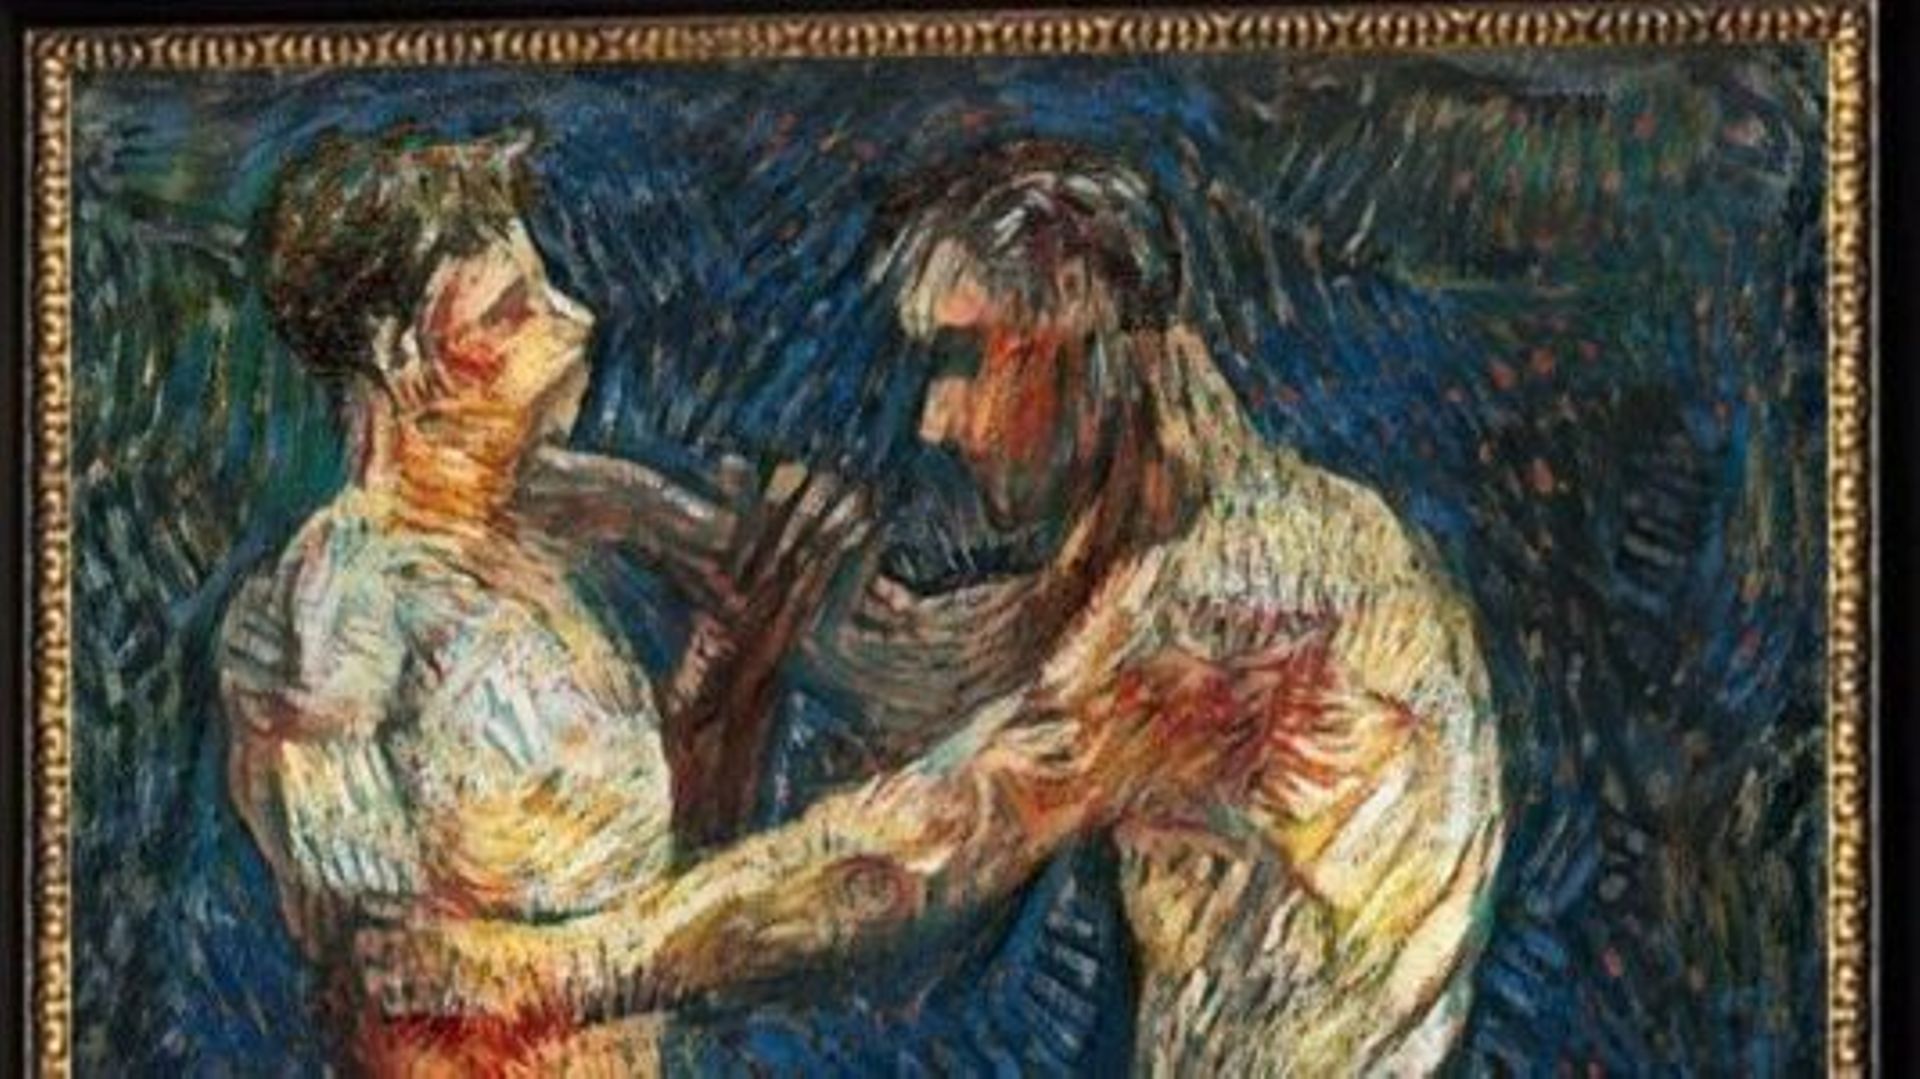 Vincent Van Gogh a probablement réalisé "Two Wrestlers" en 1886, lorsqu’il était à l’Académie d’Anvers.